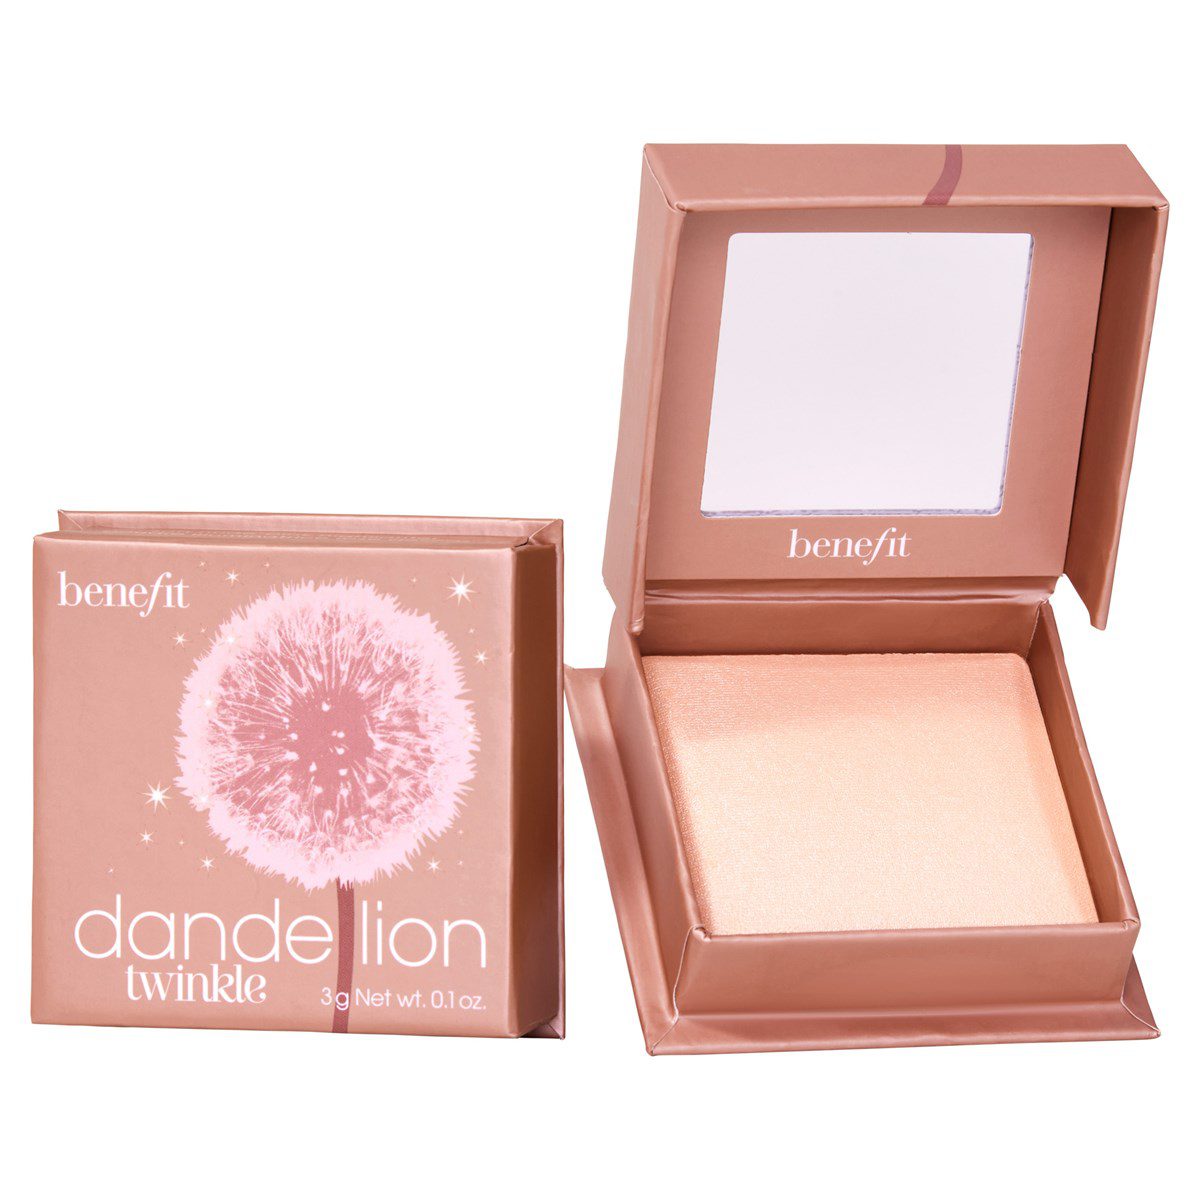 02-dandelion-twinkle-styled